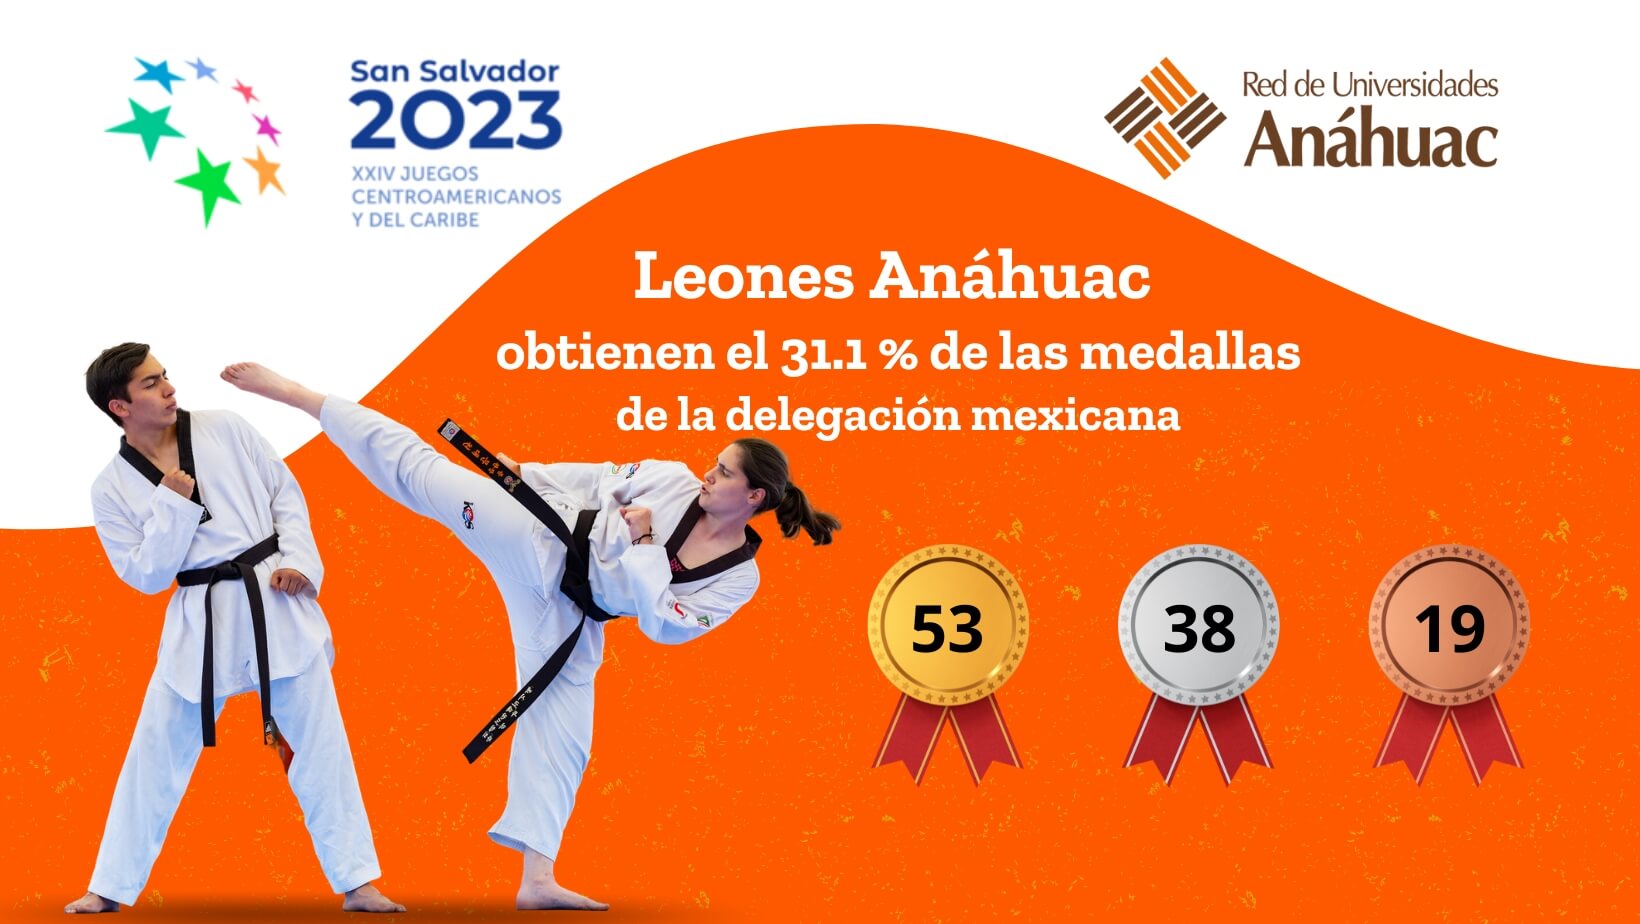 Leones Anáhuac obtienen 110 medallas en Juegos Centroamericanos